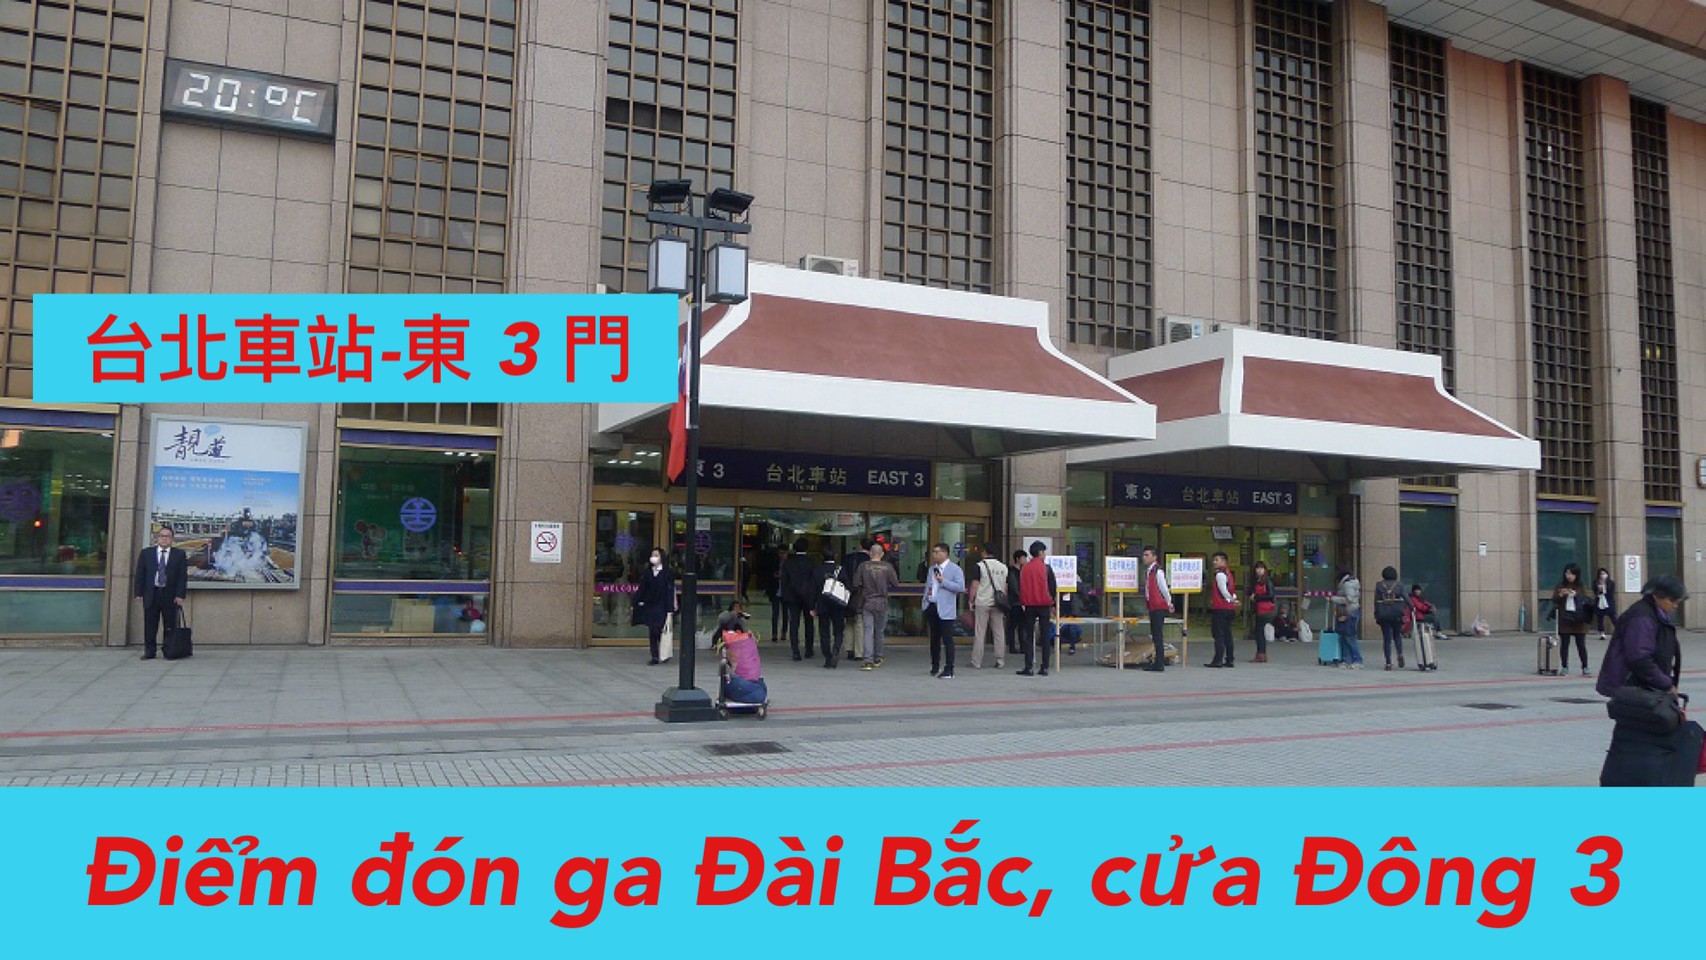 7:00 Đón ga Đài Bắc East 3 (台北火車站 )